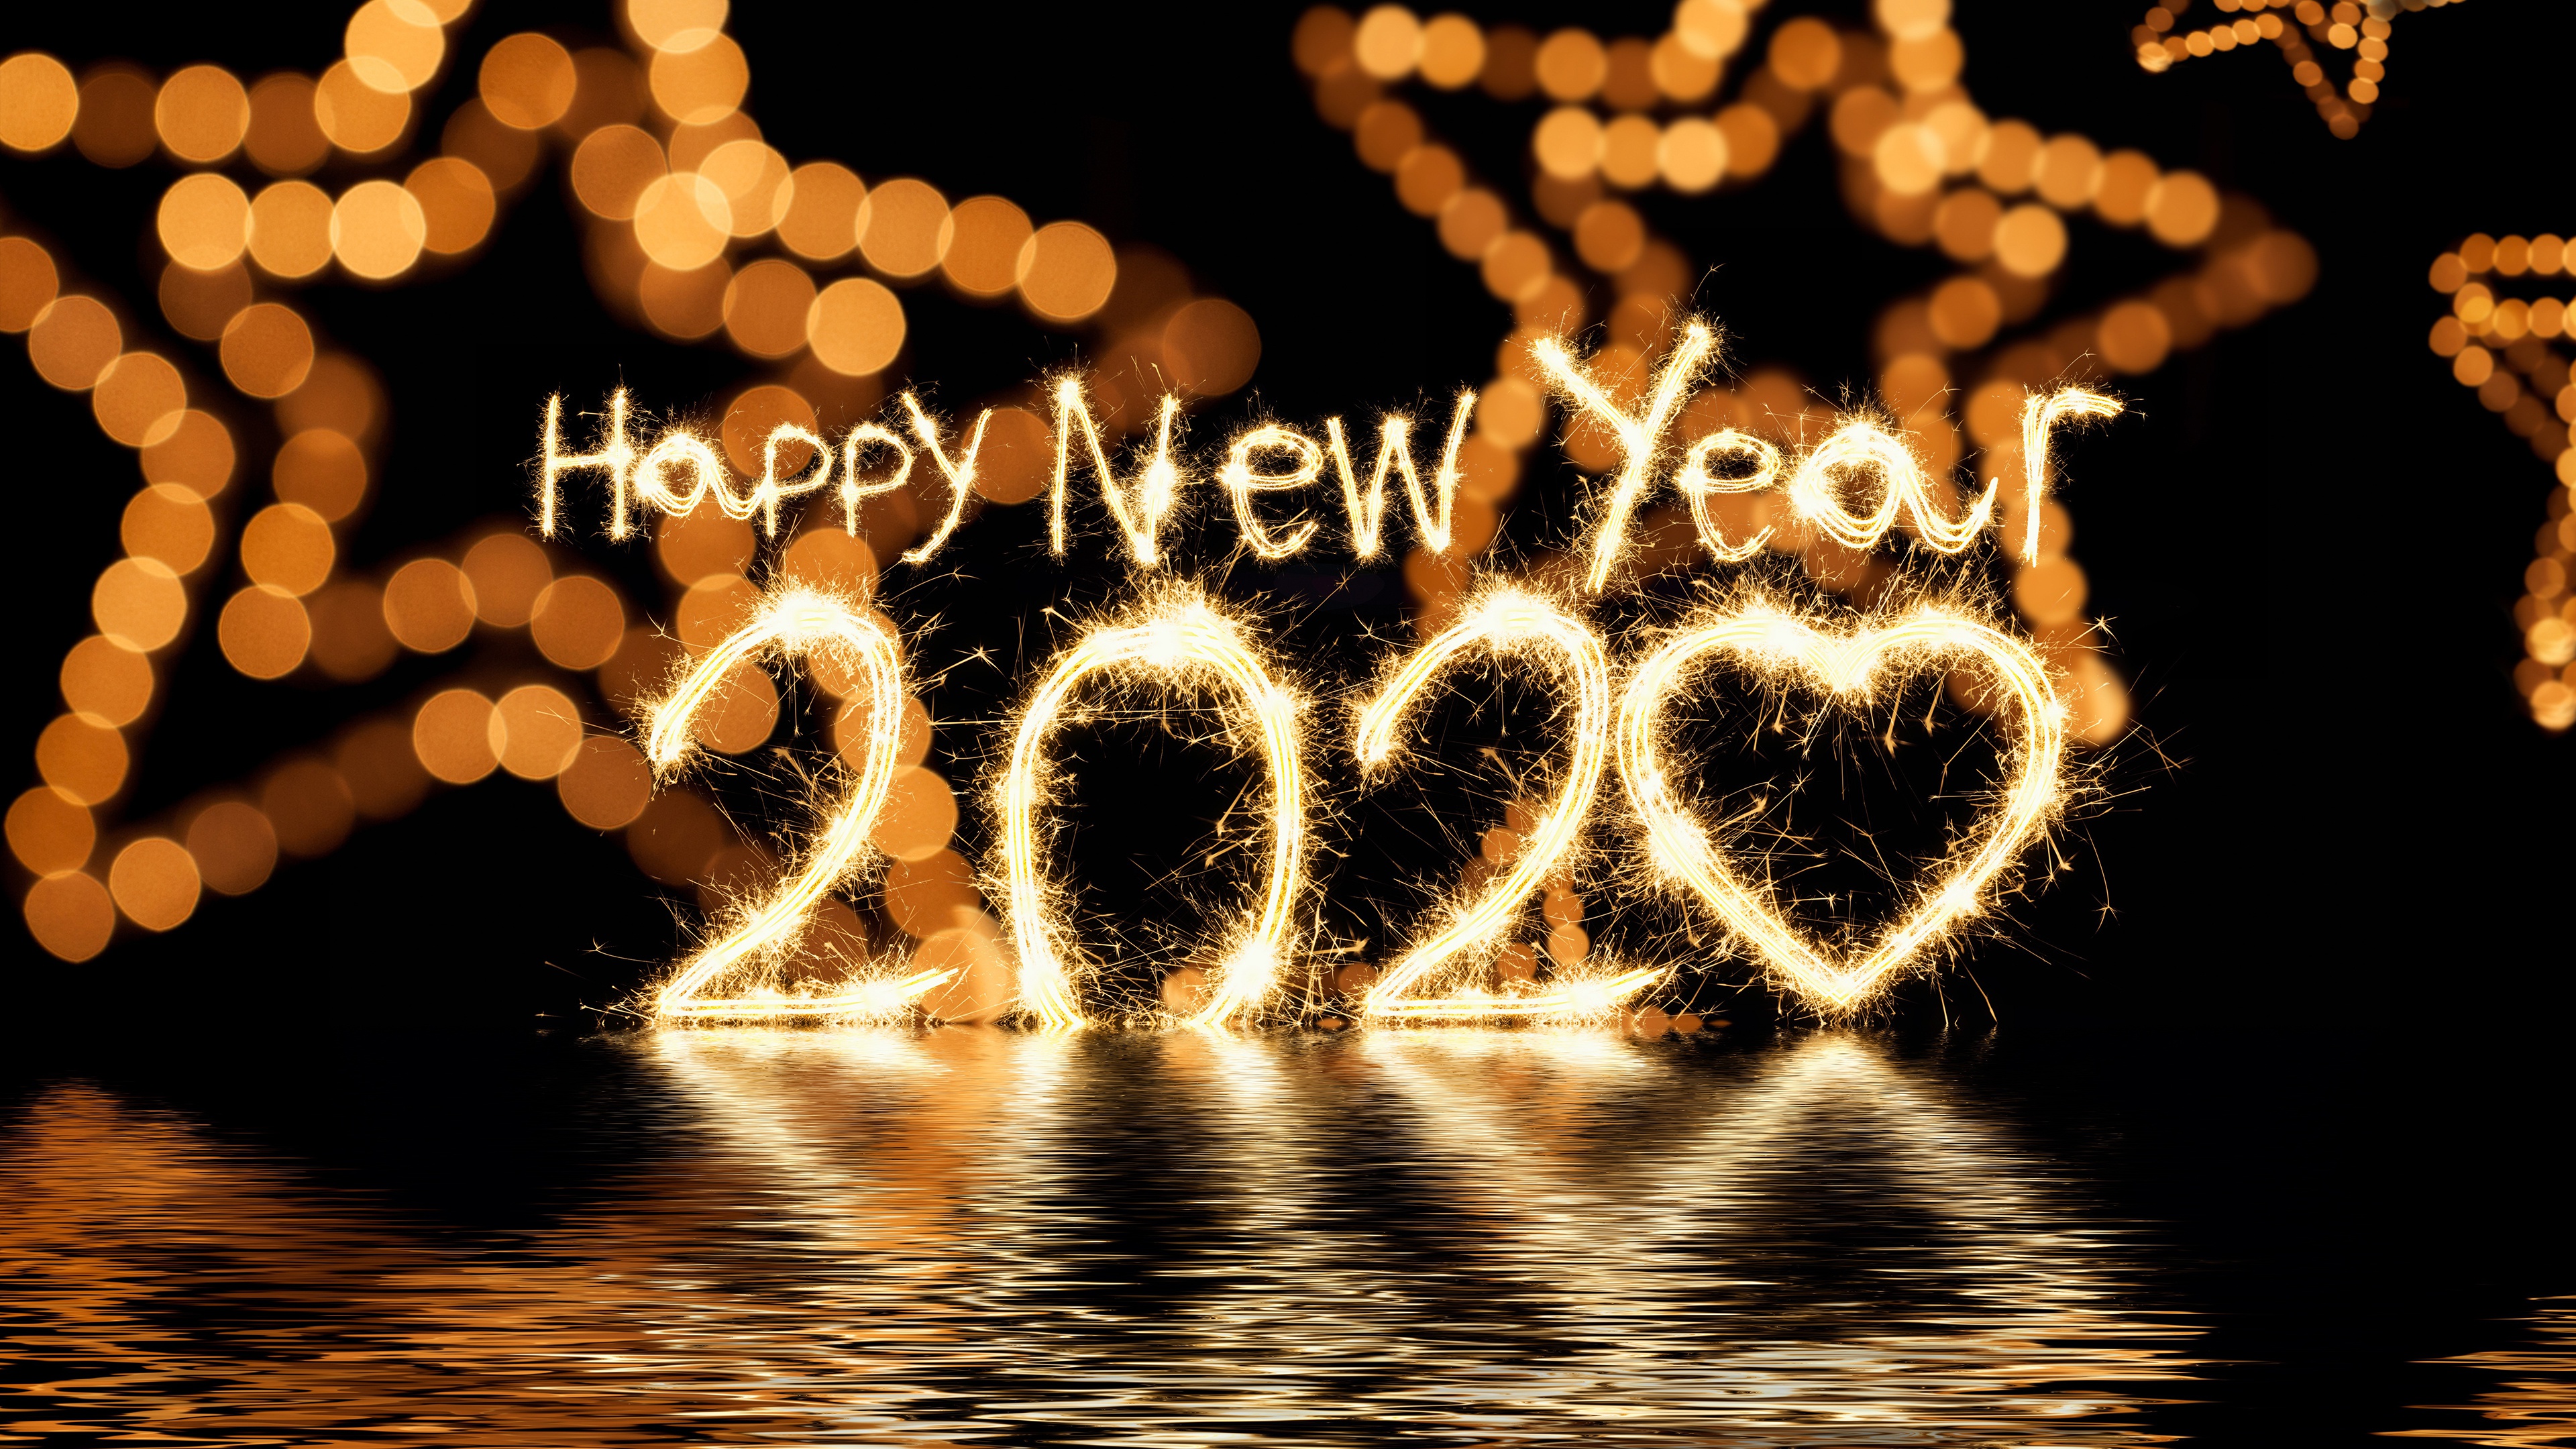 Happy New Year 2020 Hd Wallpaper 4k For Desktop - Happy New Year 2020 4k - HD Wallpaper 